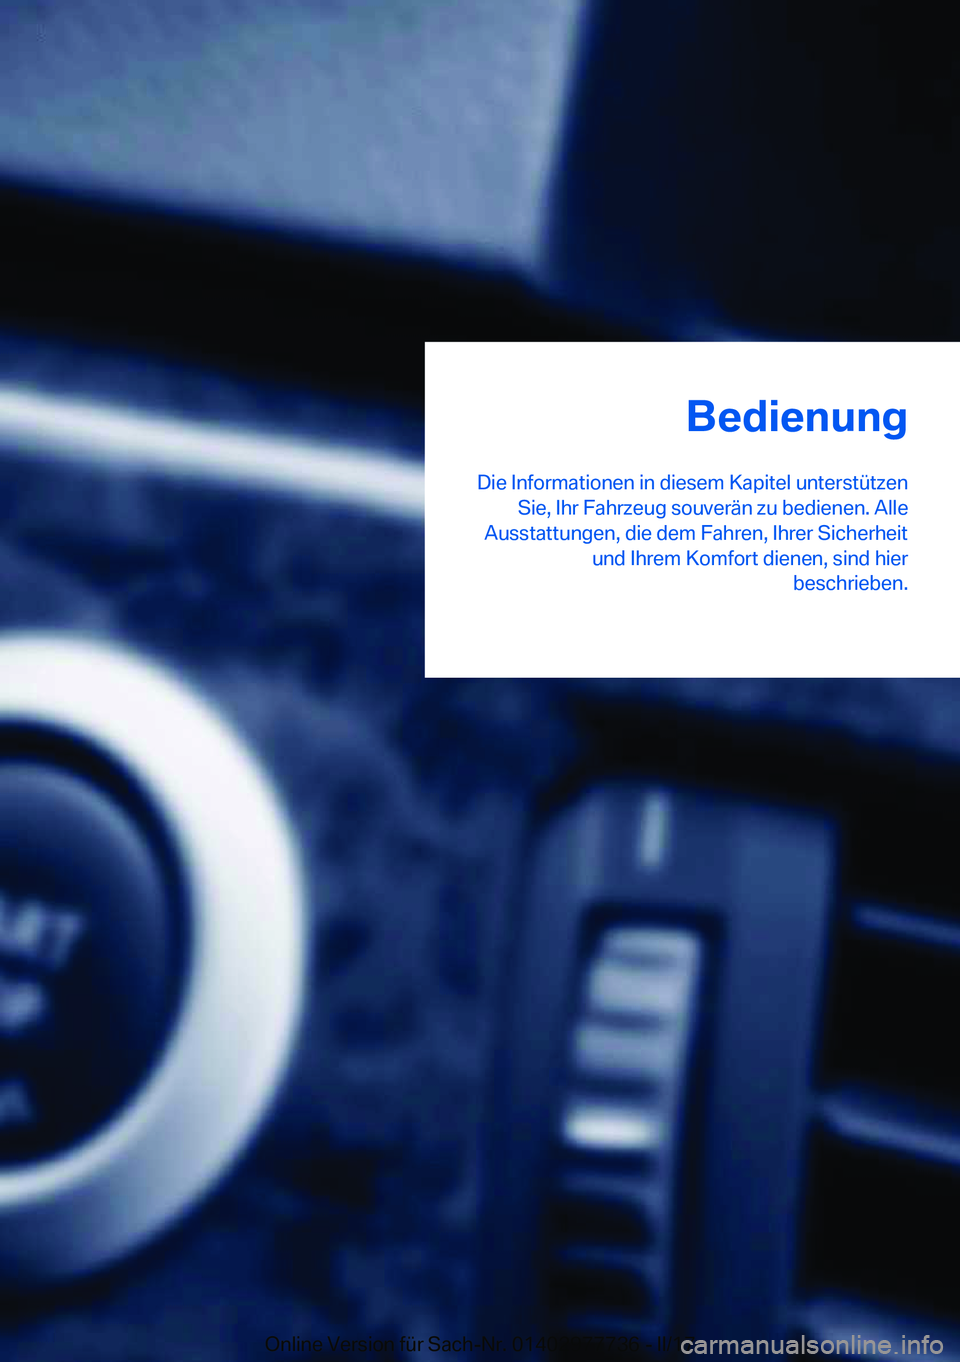 BMW 2 SERIES COUPE 2017  Betriebsanleitungen (in German) �B�e�d�i�e�n�u�n�g
�D�i�e� �I�n�f�o�r�m�a�t�i�o�n�e�n� �i�n� �d�i�e�s�e�m� �K�a�p�i�t�e�l� �u�n�t�e�r�s�t�